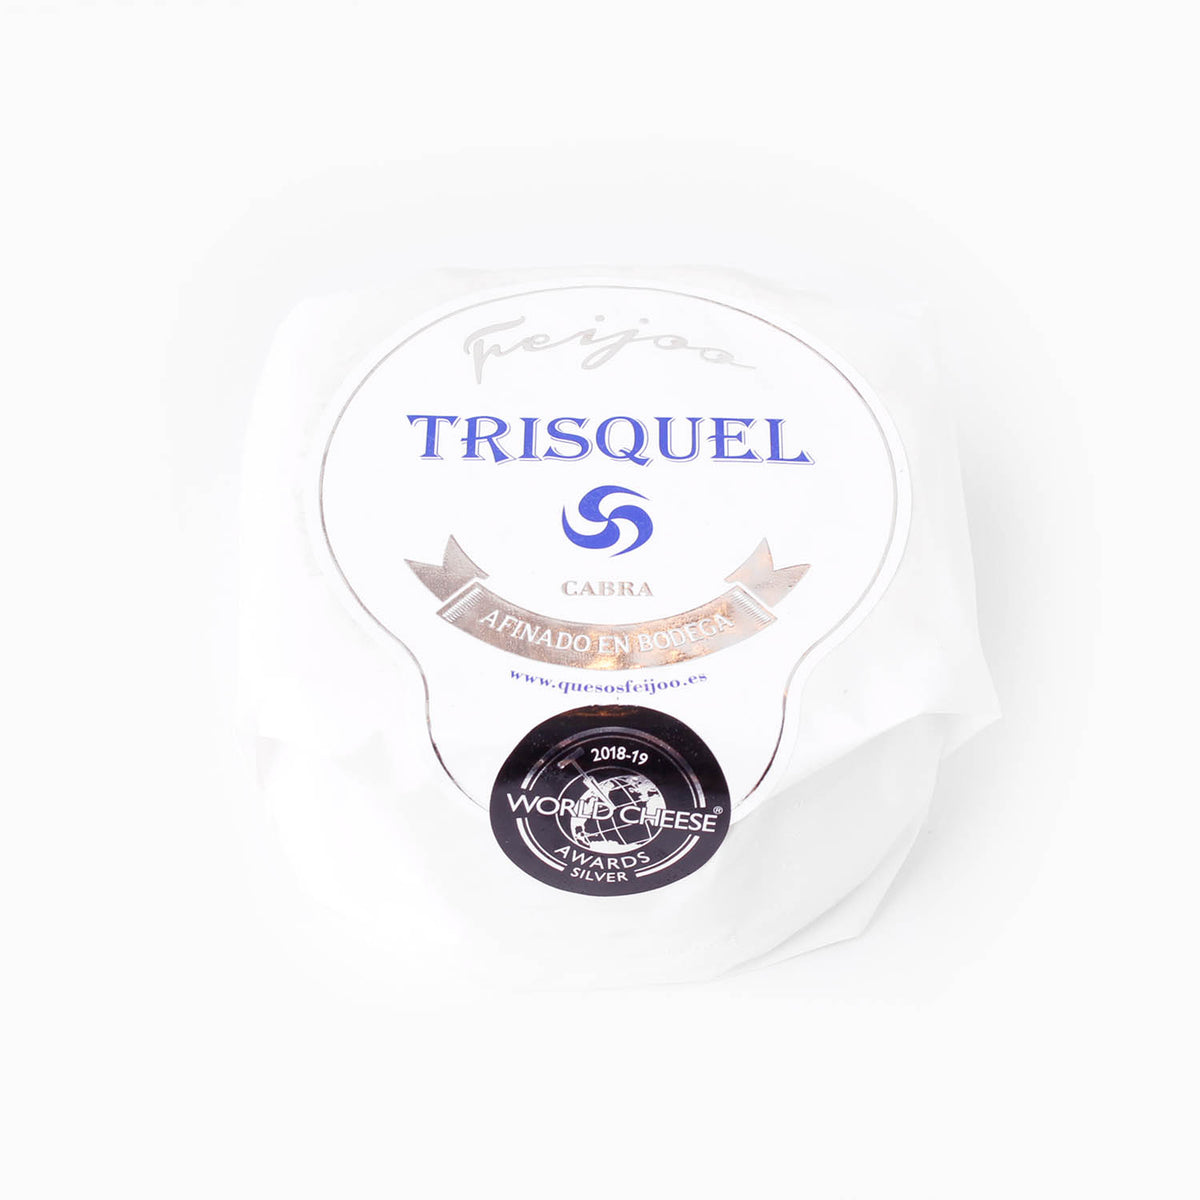 Imagen de queso Camembert de cabra Trisquel en su envoltorio con letras azules del Trisquel y el logotipo de la medalla del World Cheese Award.